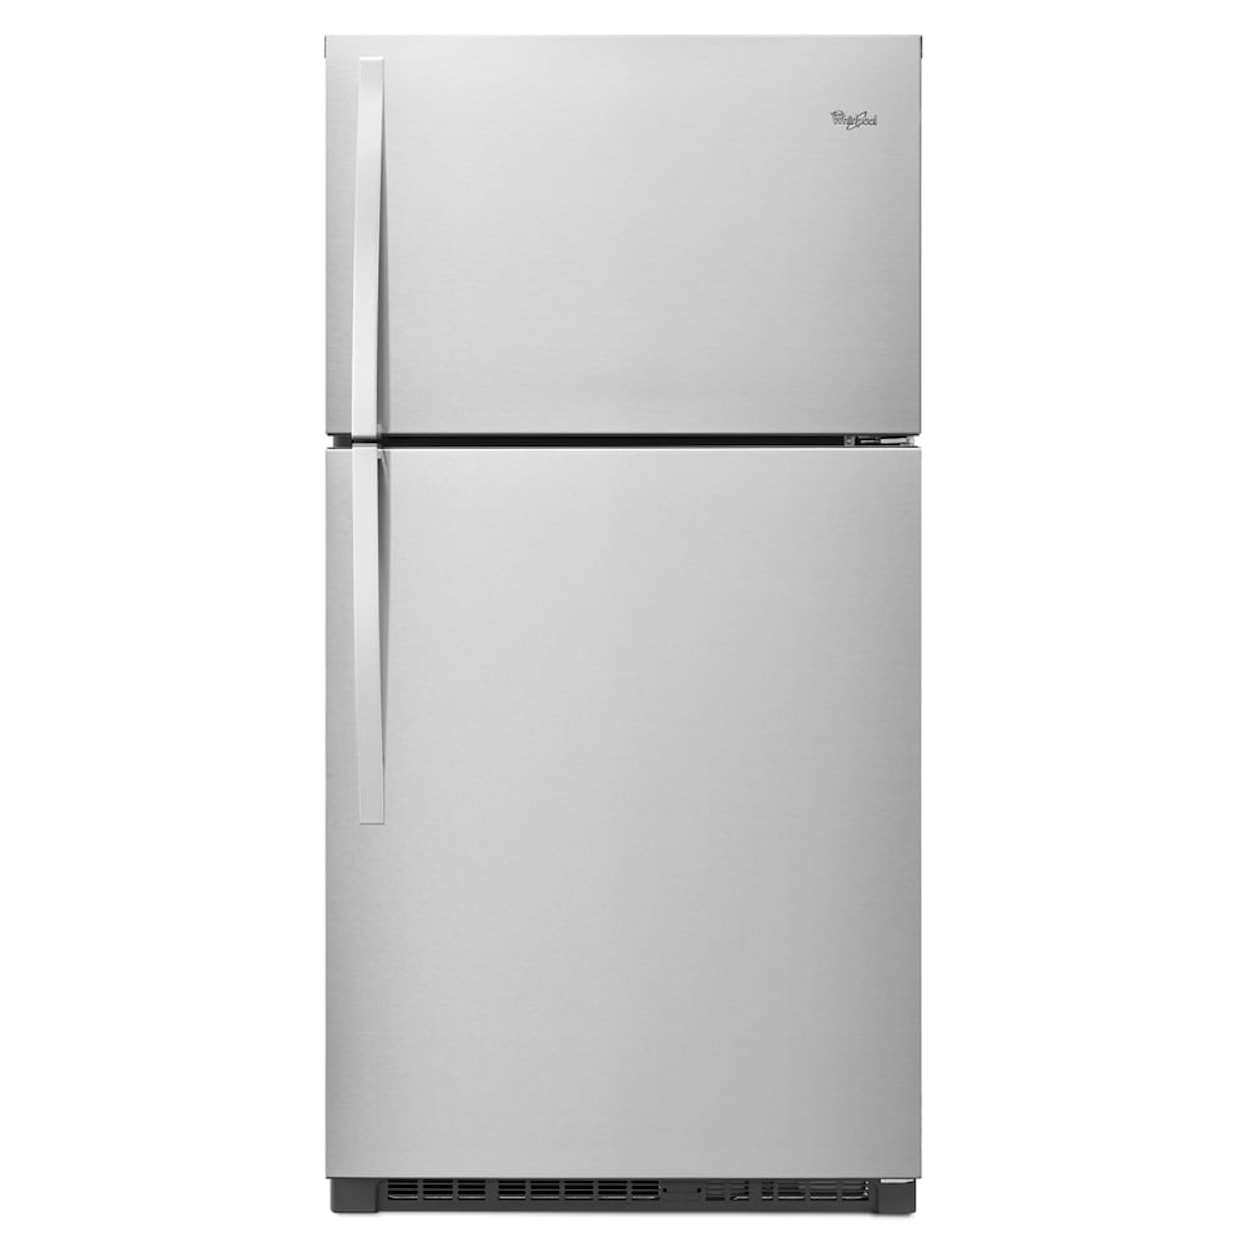 Whirlpool Refrigerators Refrigerator